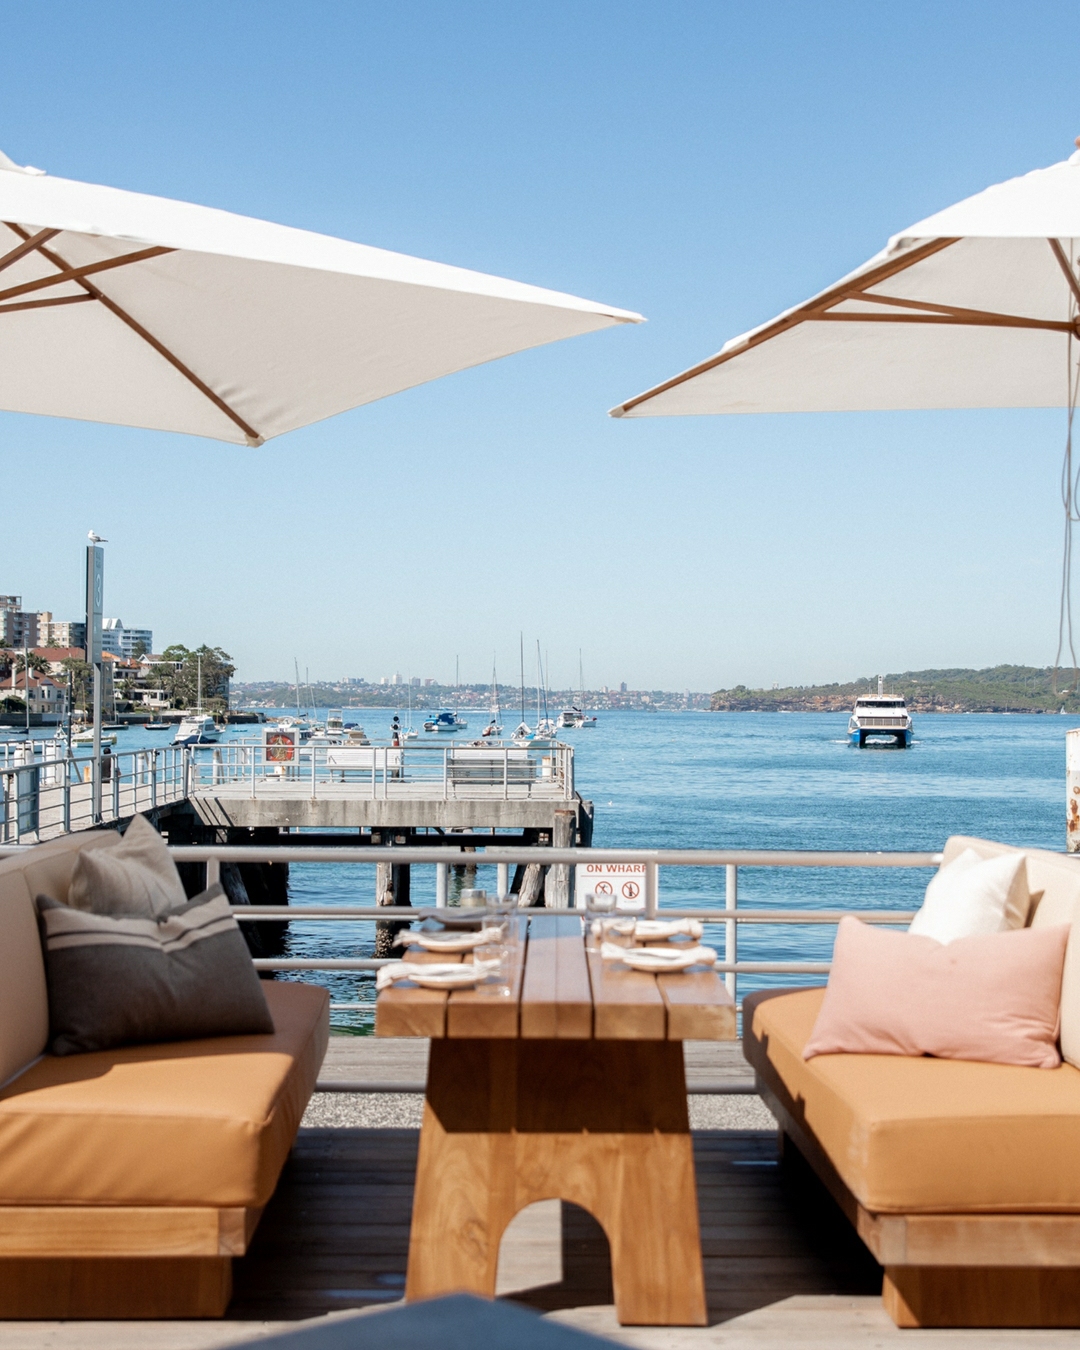 manly-wharf-hotel-sydney-beach-bar.jpg